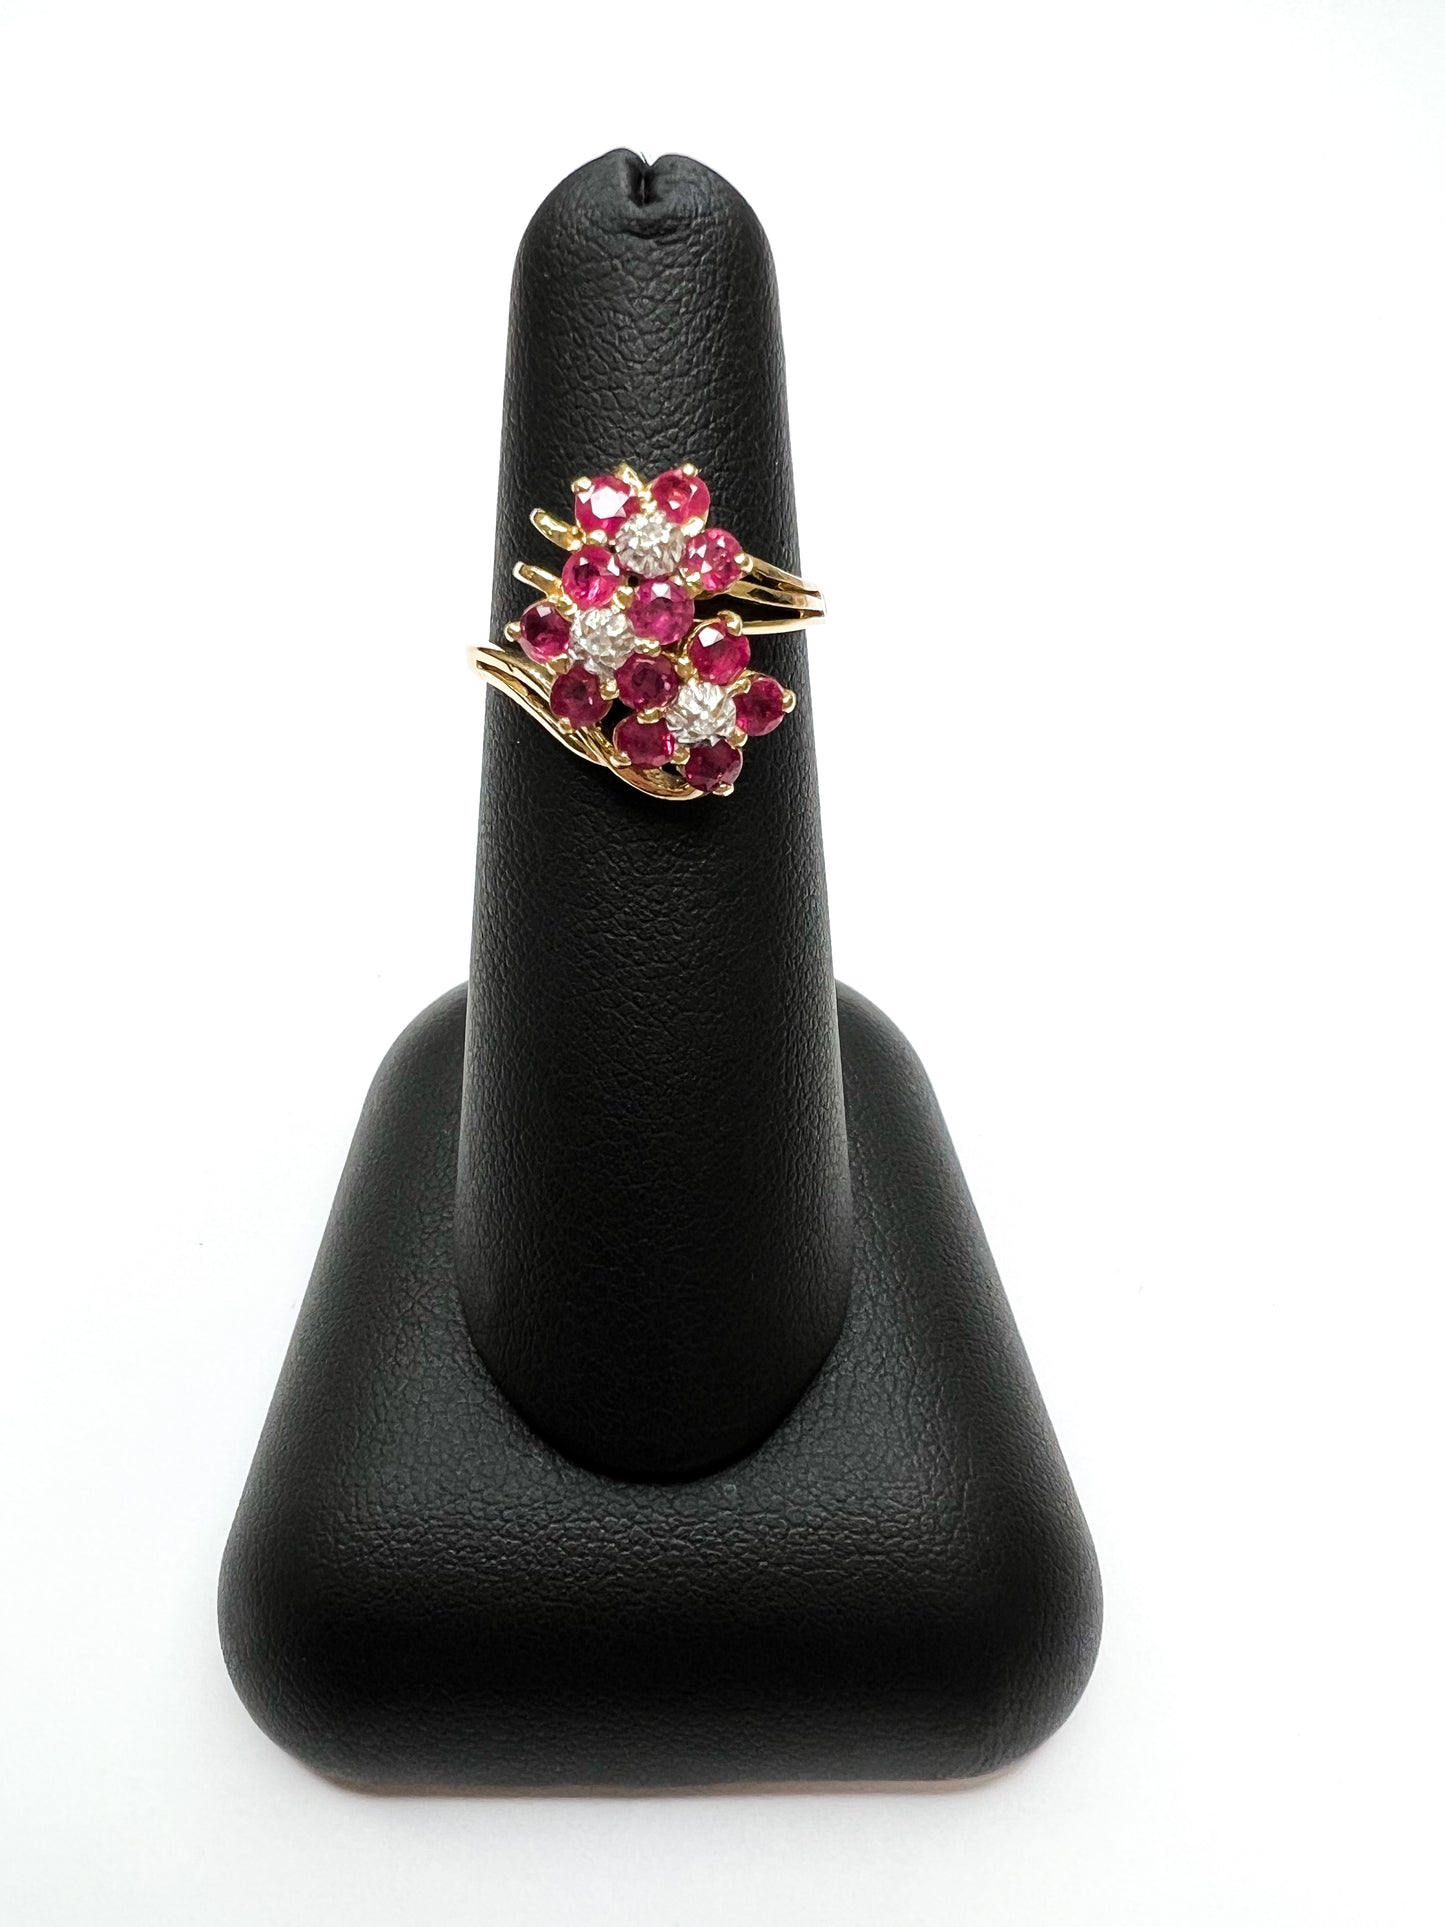 Ruby & Diamond Flower Cluster Ring